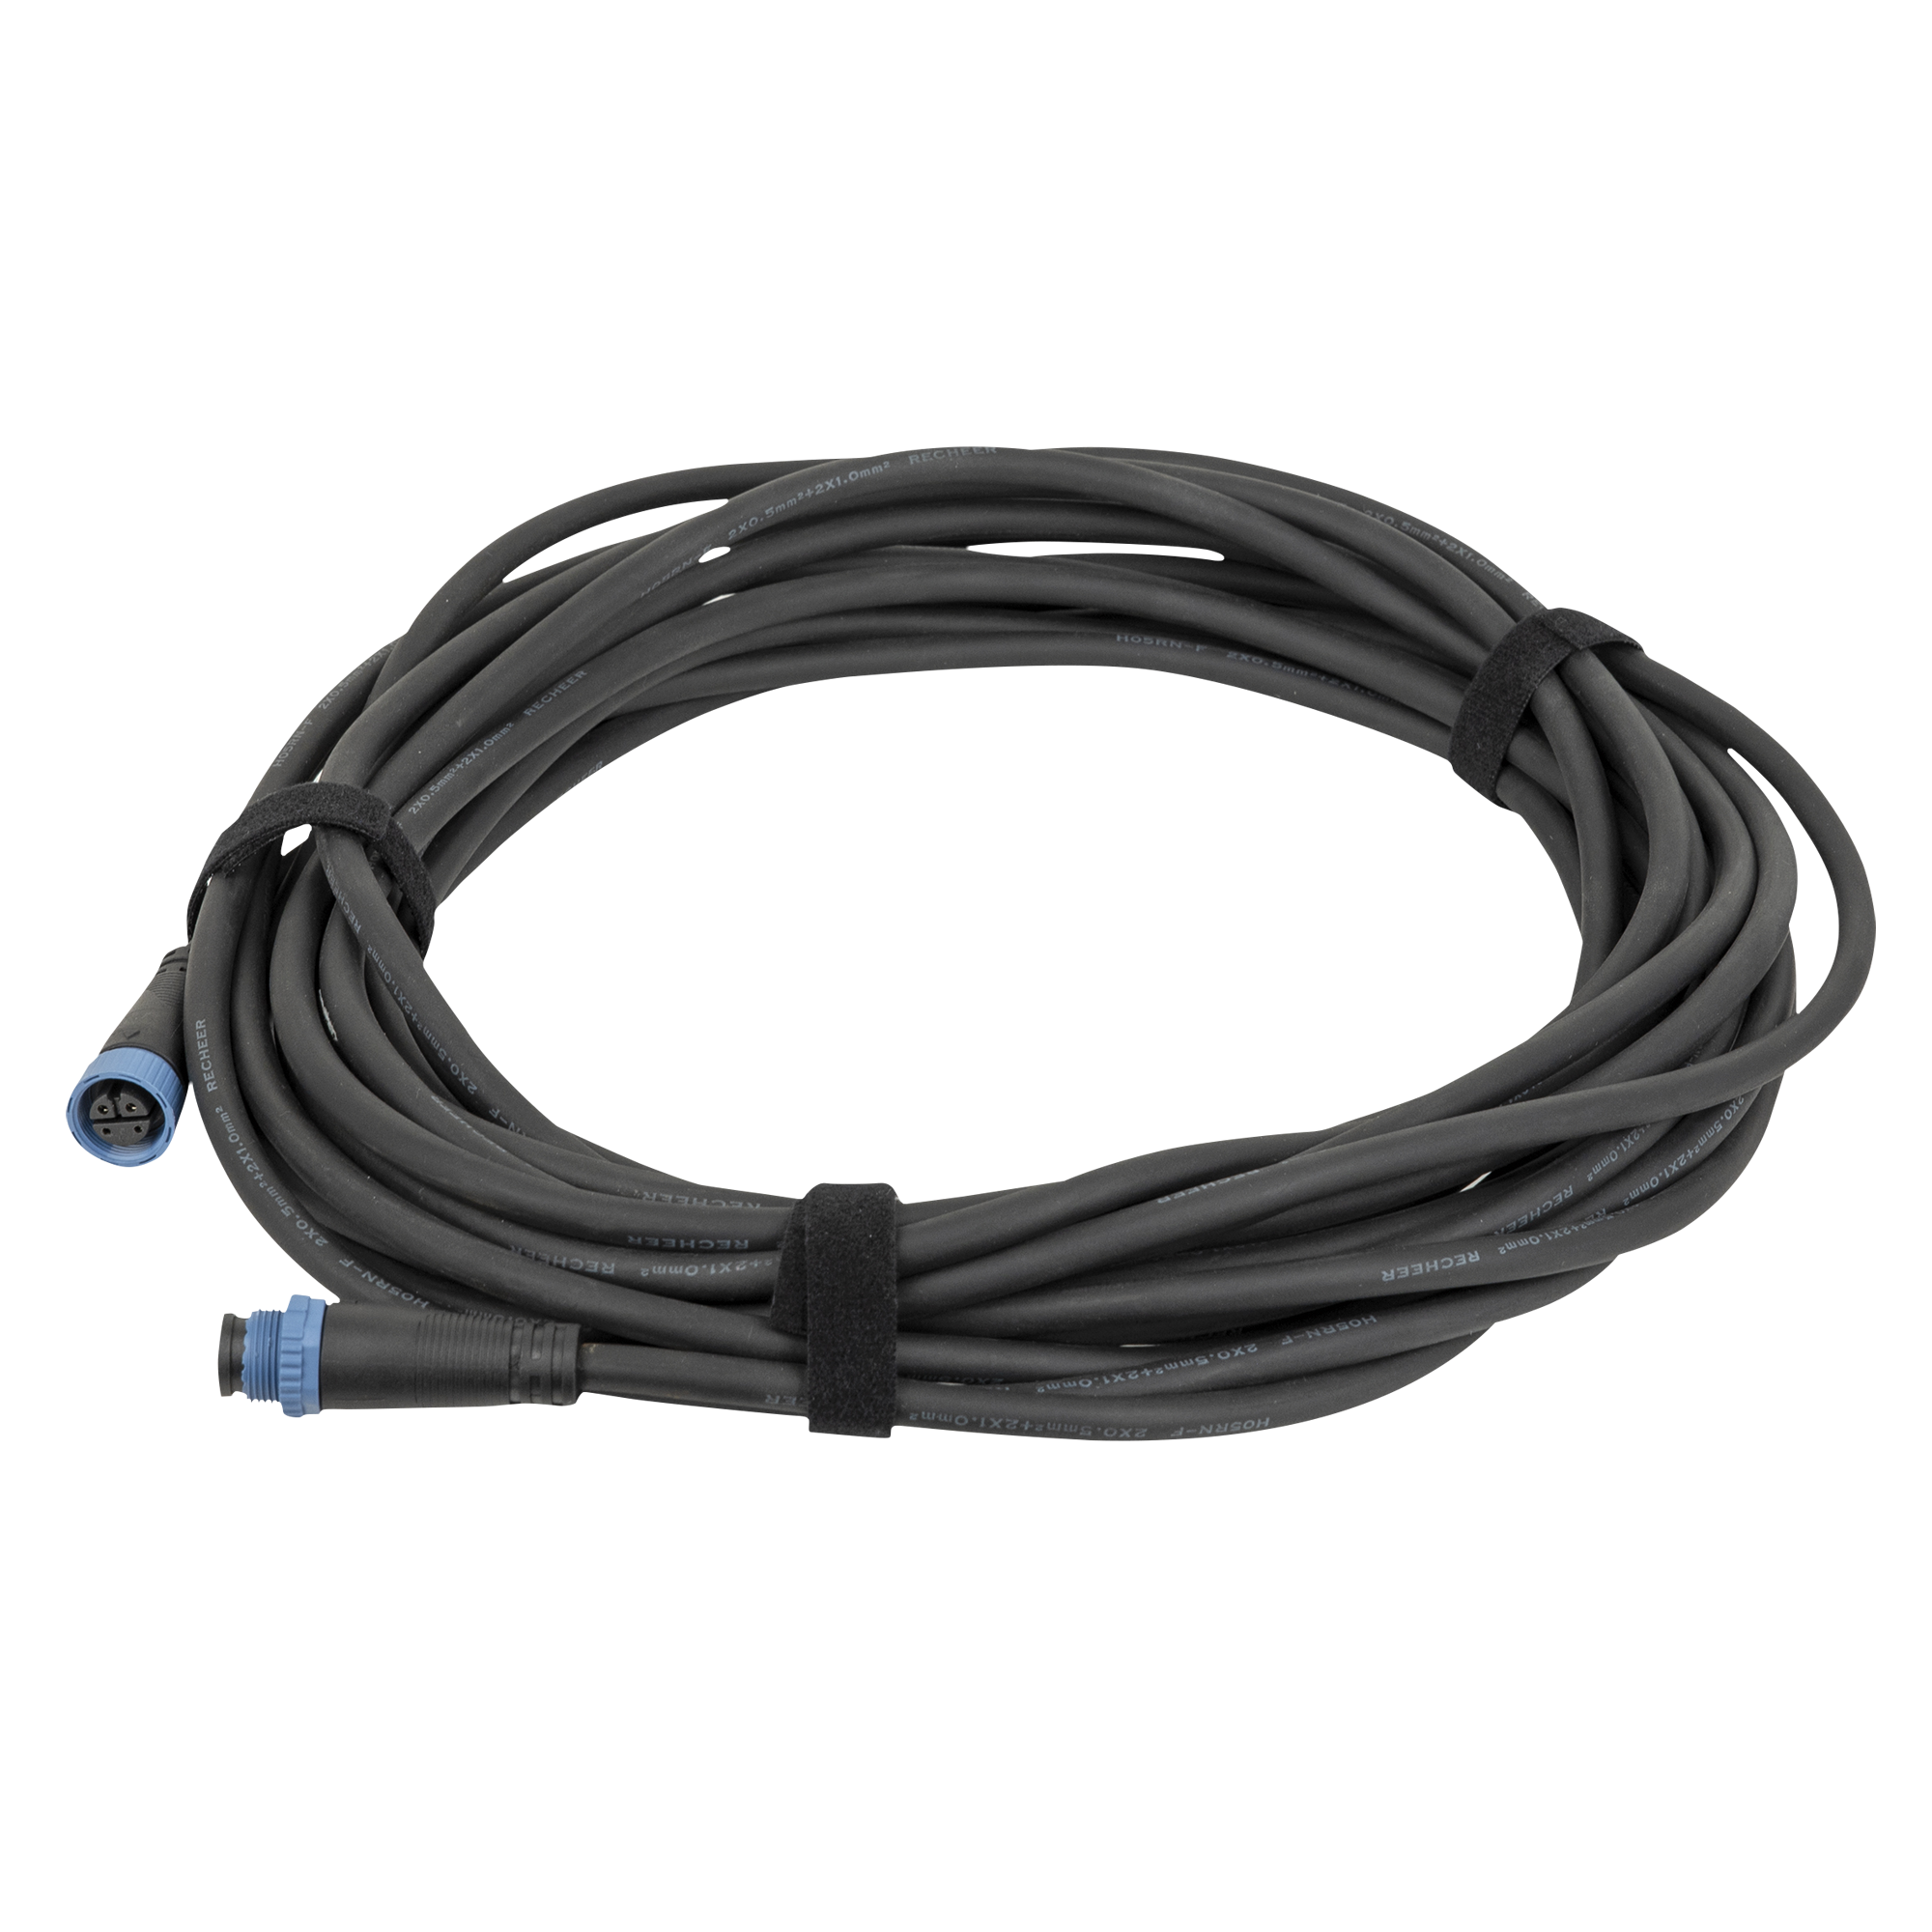 Showtec Extension Cable for Festoonlight Q4 2,5 m